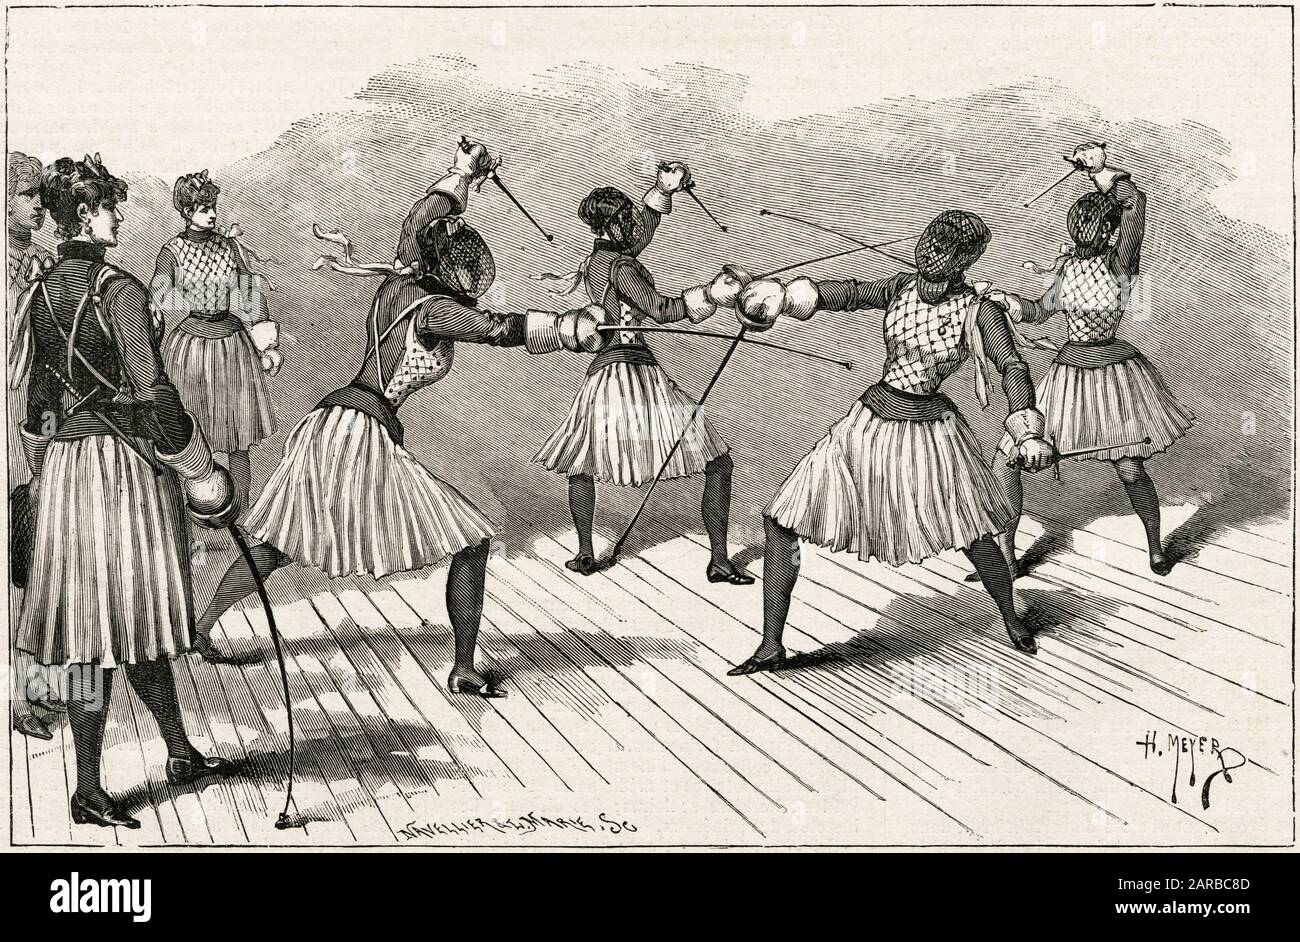 Dos pares de tiradores femeninos practican sus habilidades. (2 de 2) Fecha: 1885 Foto de stock